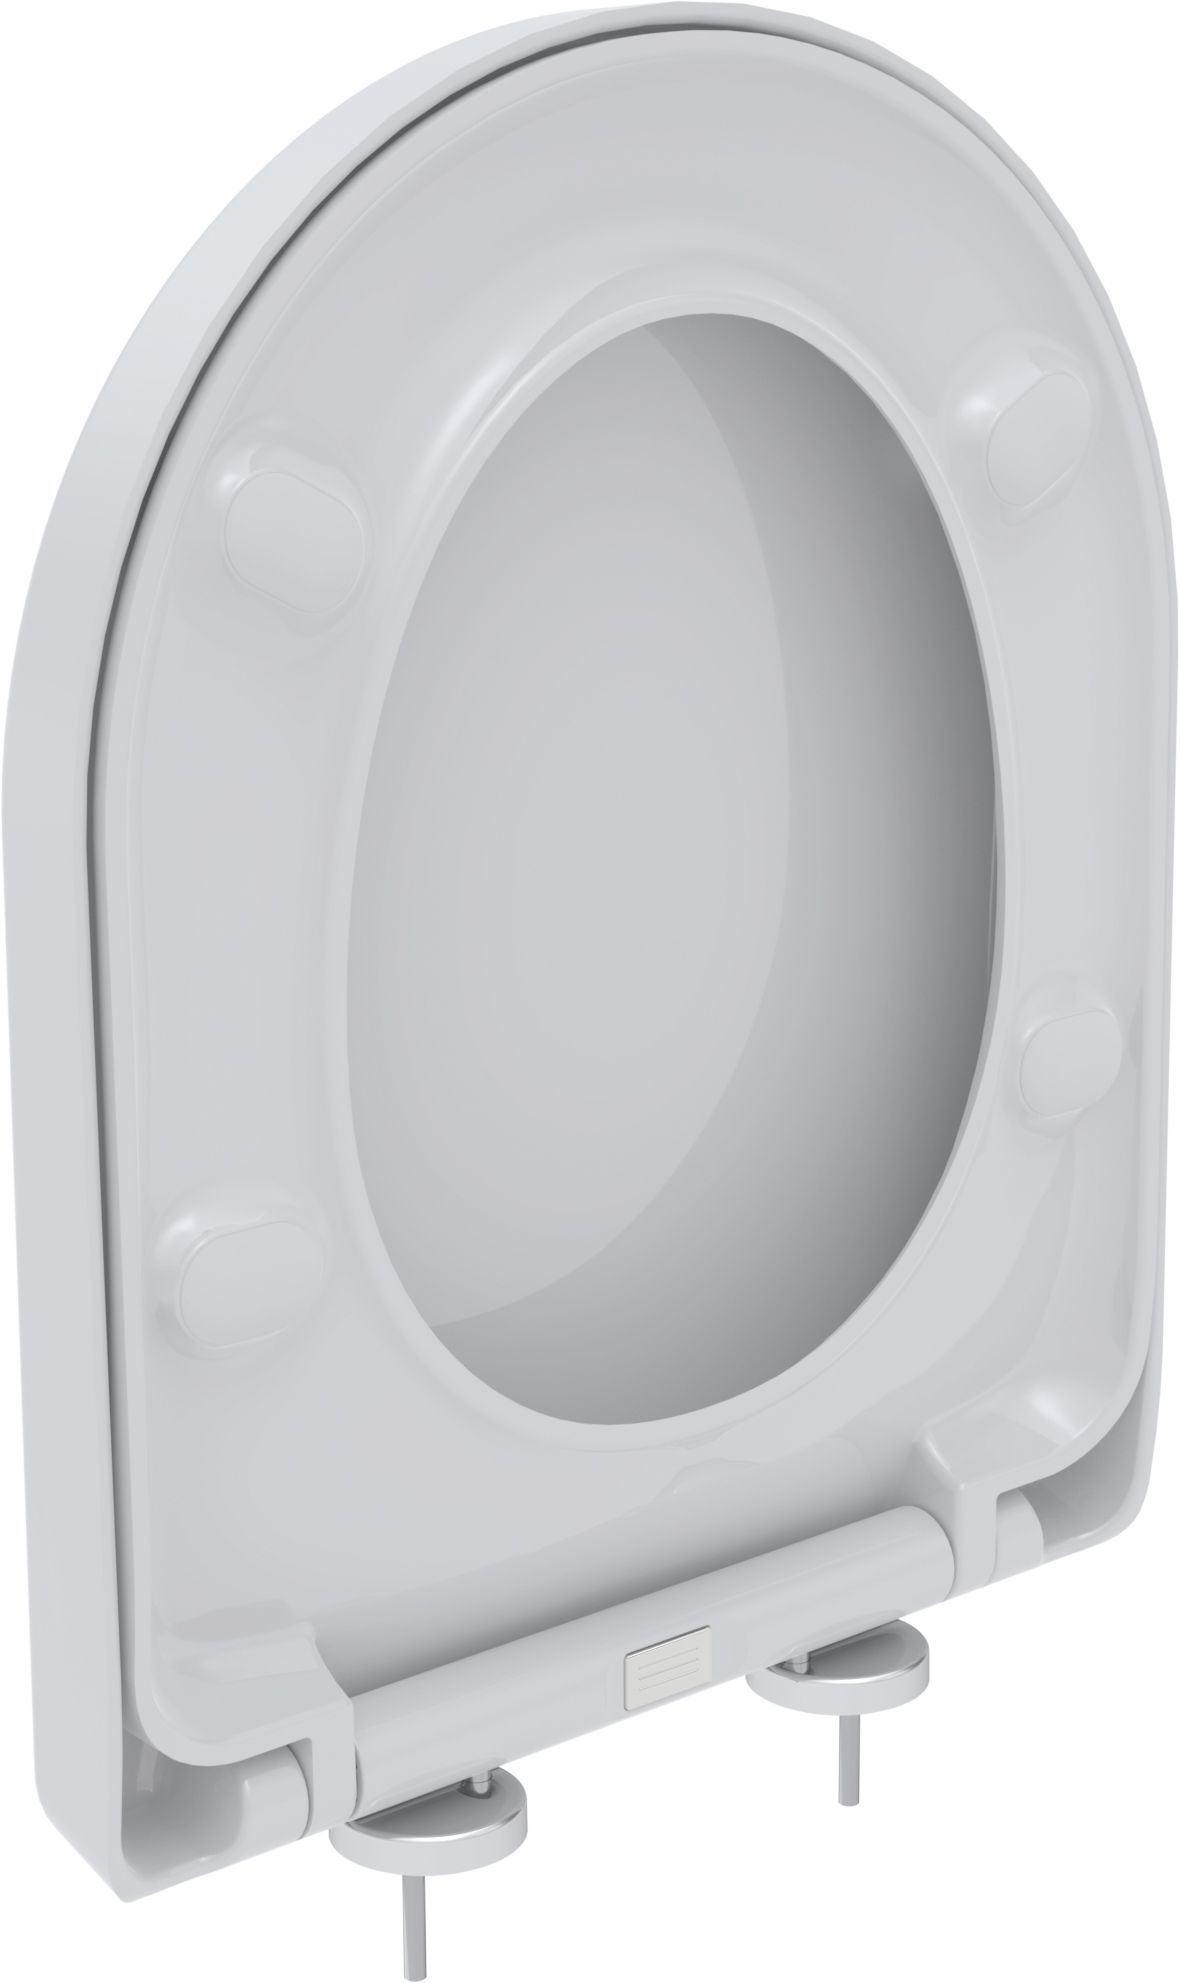 Toilet seat Scorpio S, white